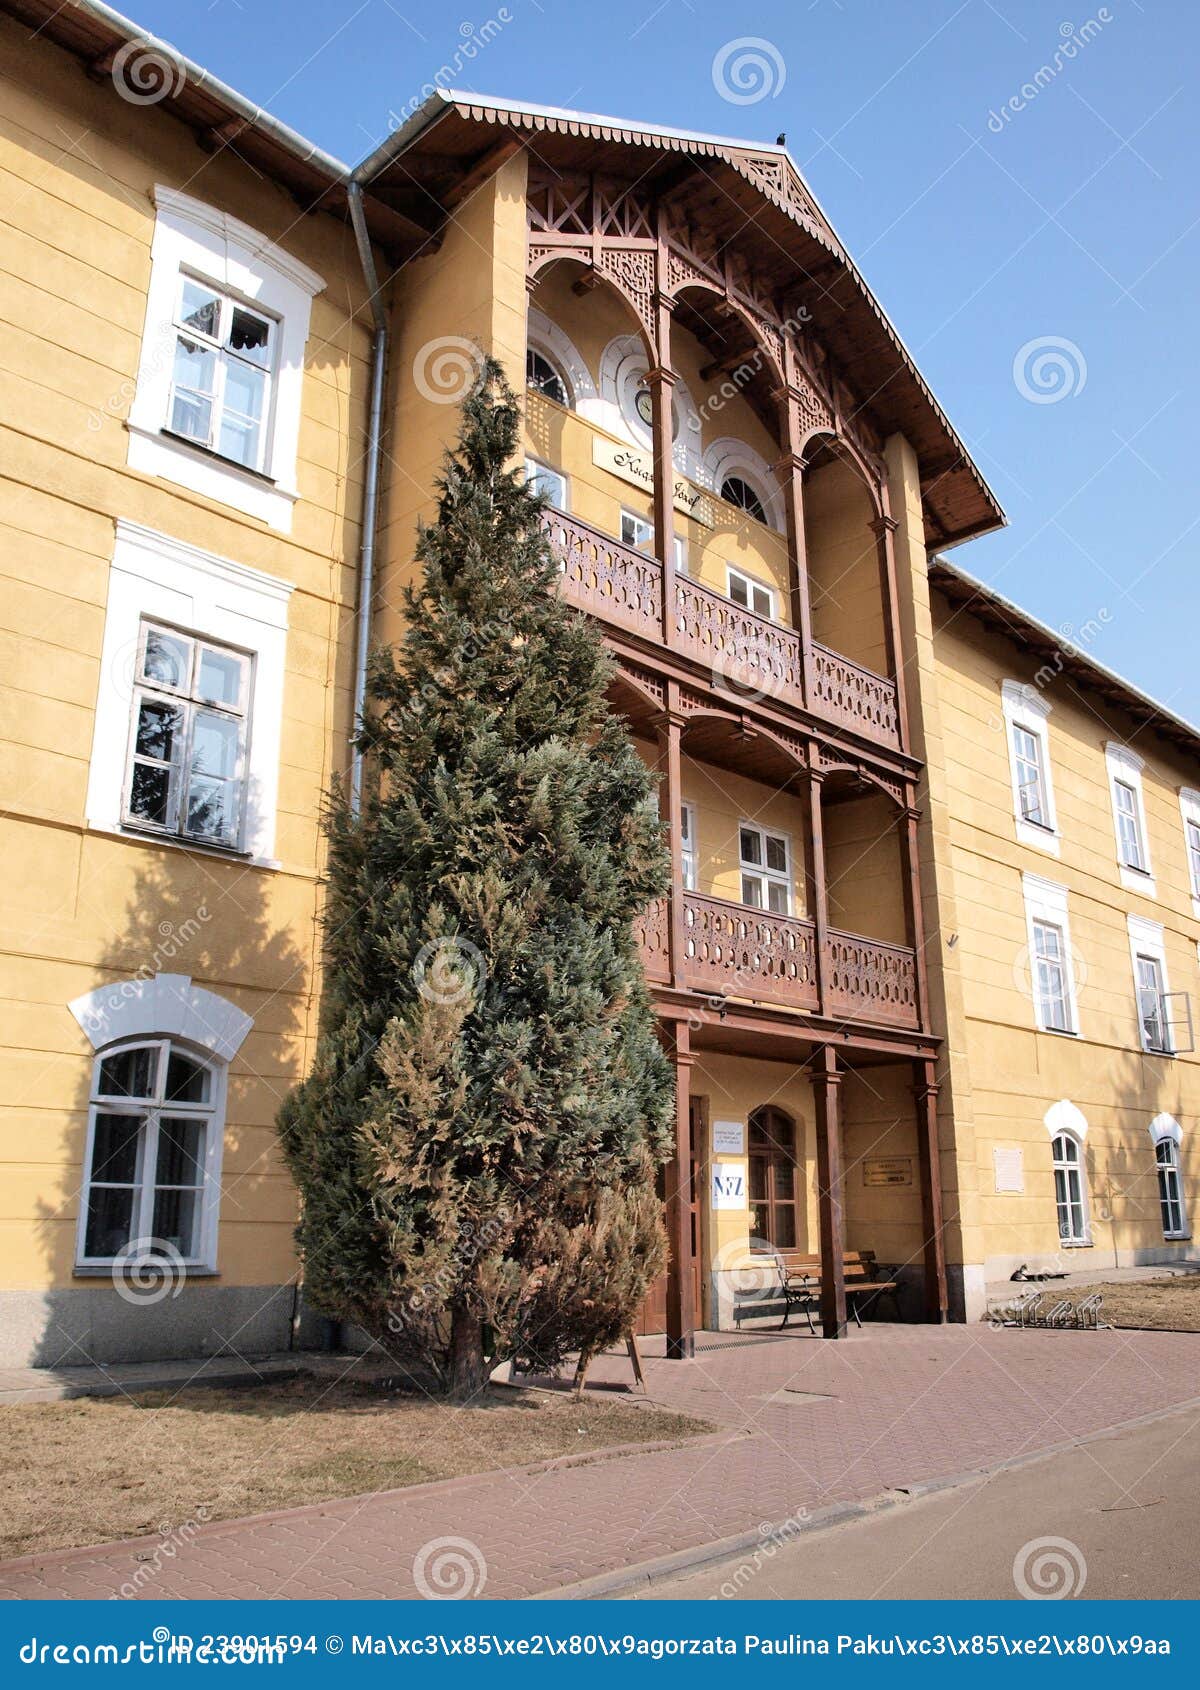 sanatorium house, naleczow, poland